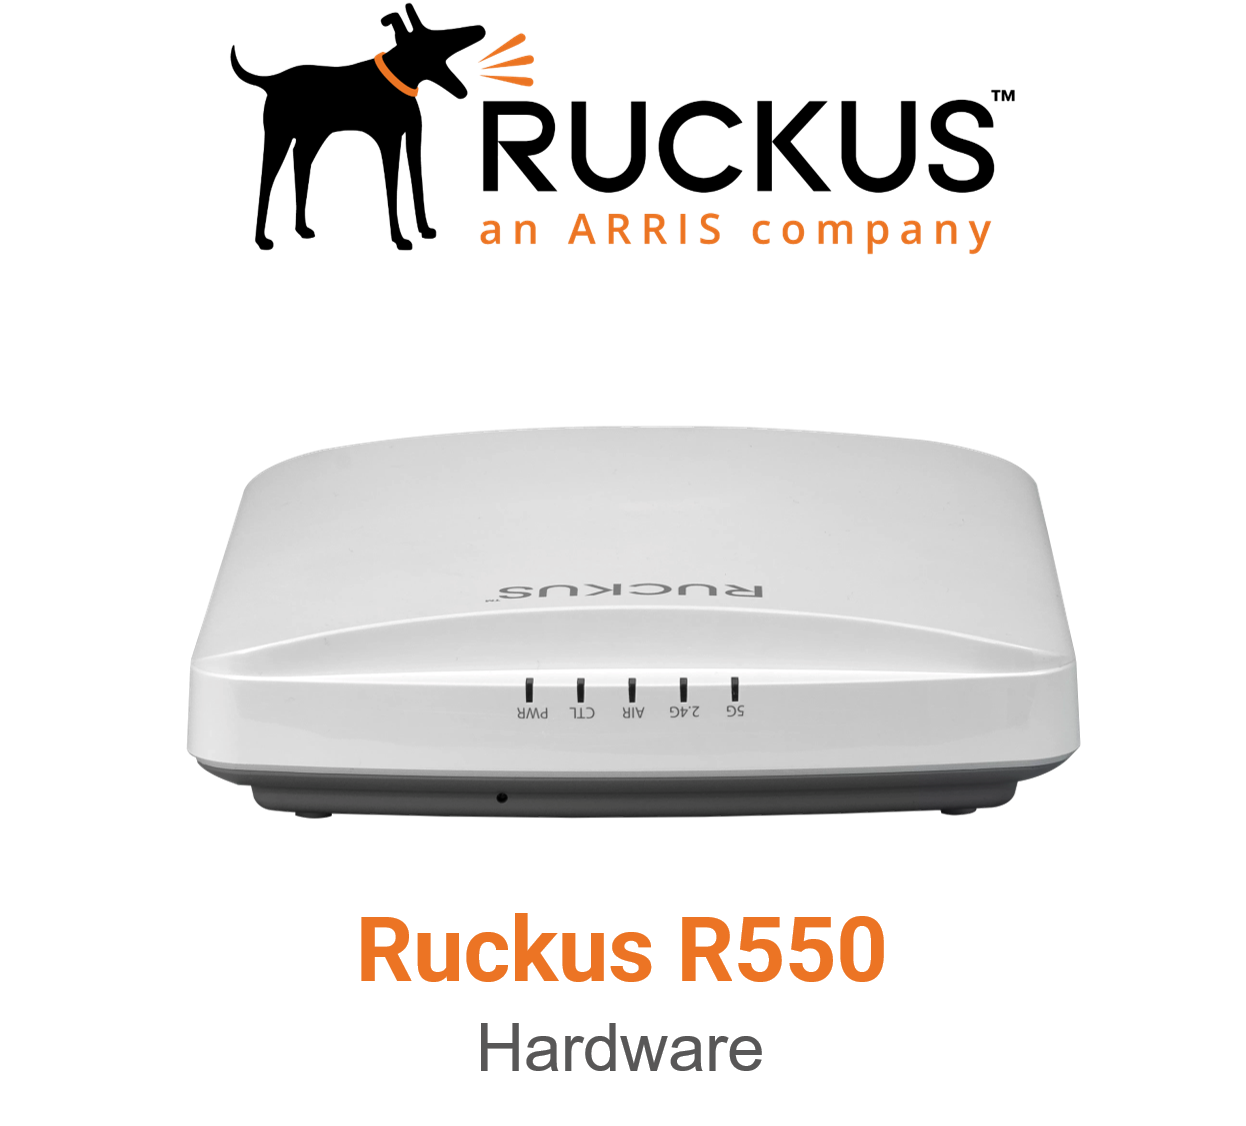 Ruckus R760 WiFi-6 Tri-band access point